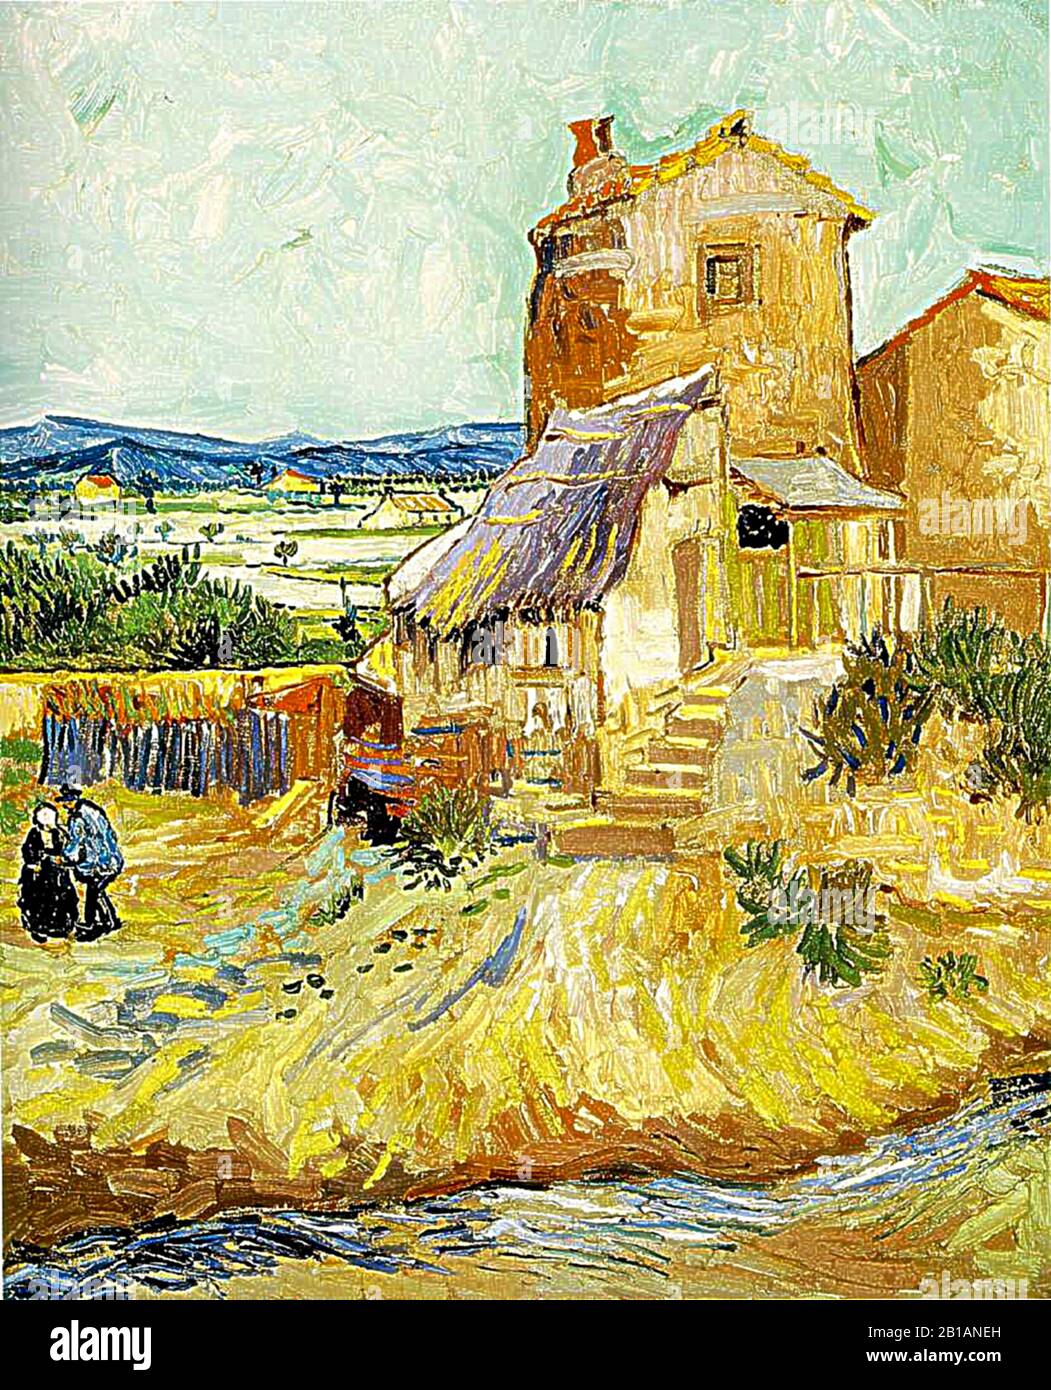 The Old Mill, 1888 - dipinto di Vincent van Gogh - immagine Ad Altissima risoluzione e qualità Foto Stock